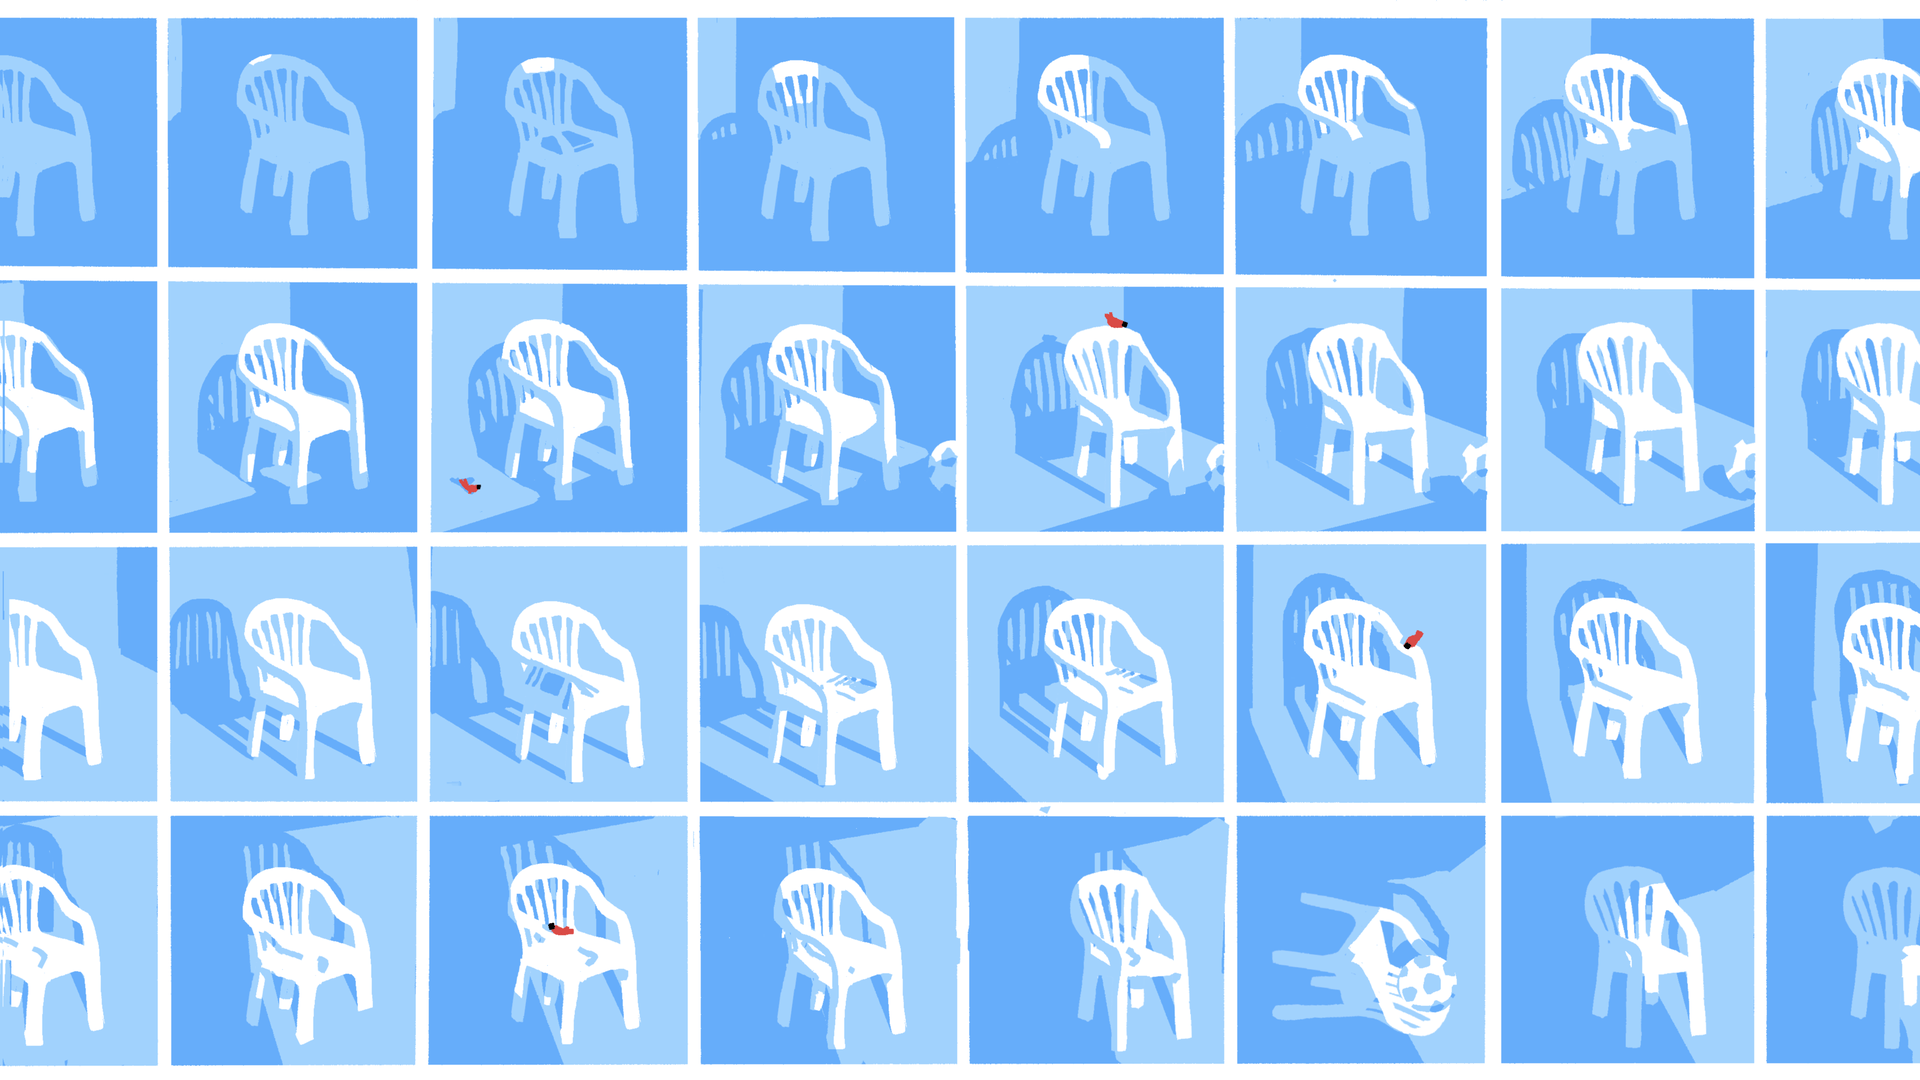 Illustratie van sequentie van plastic stoel door de dag heen